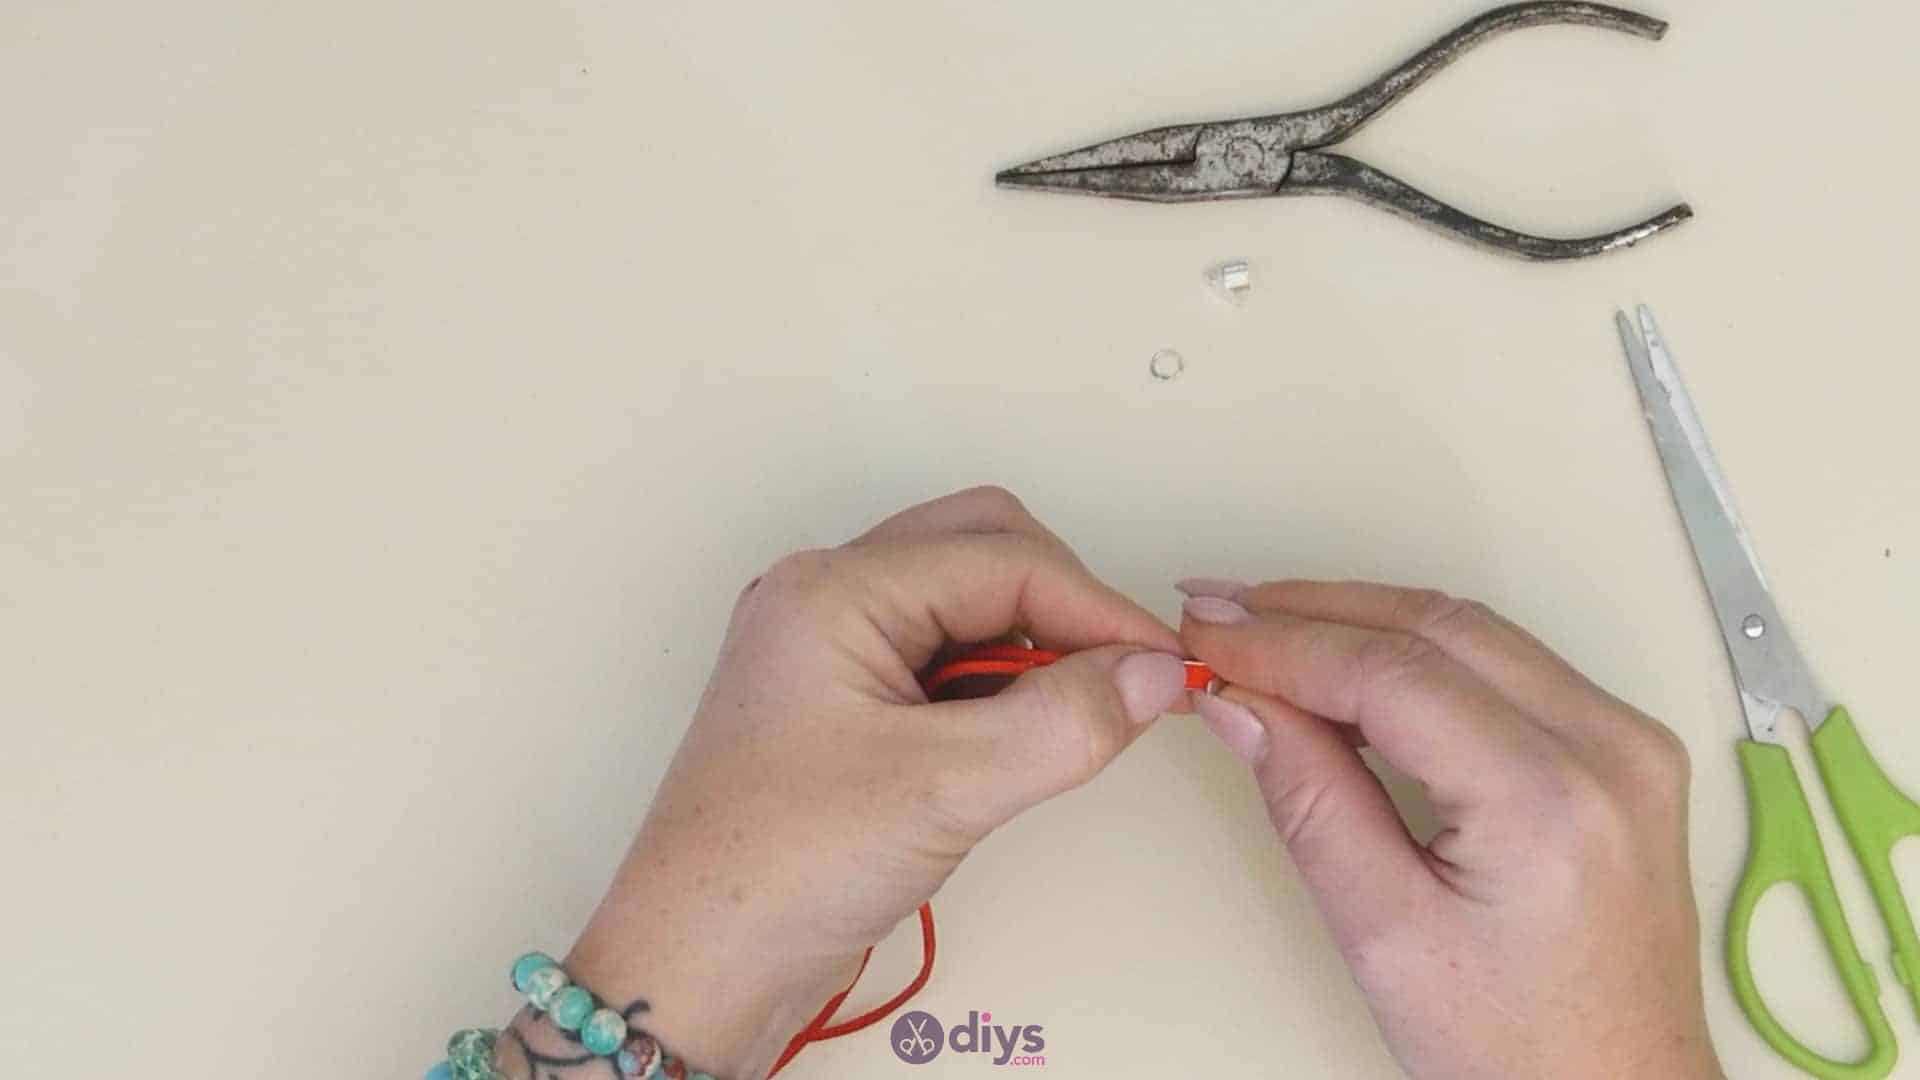 Diy knotted bracelet step 4